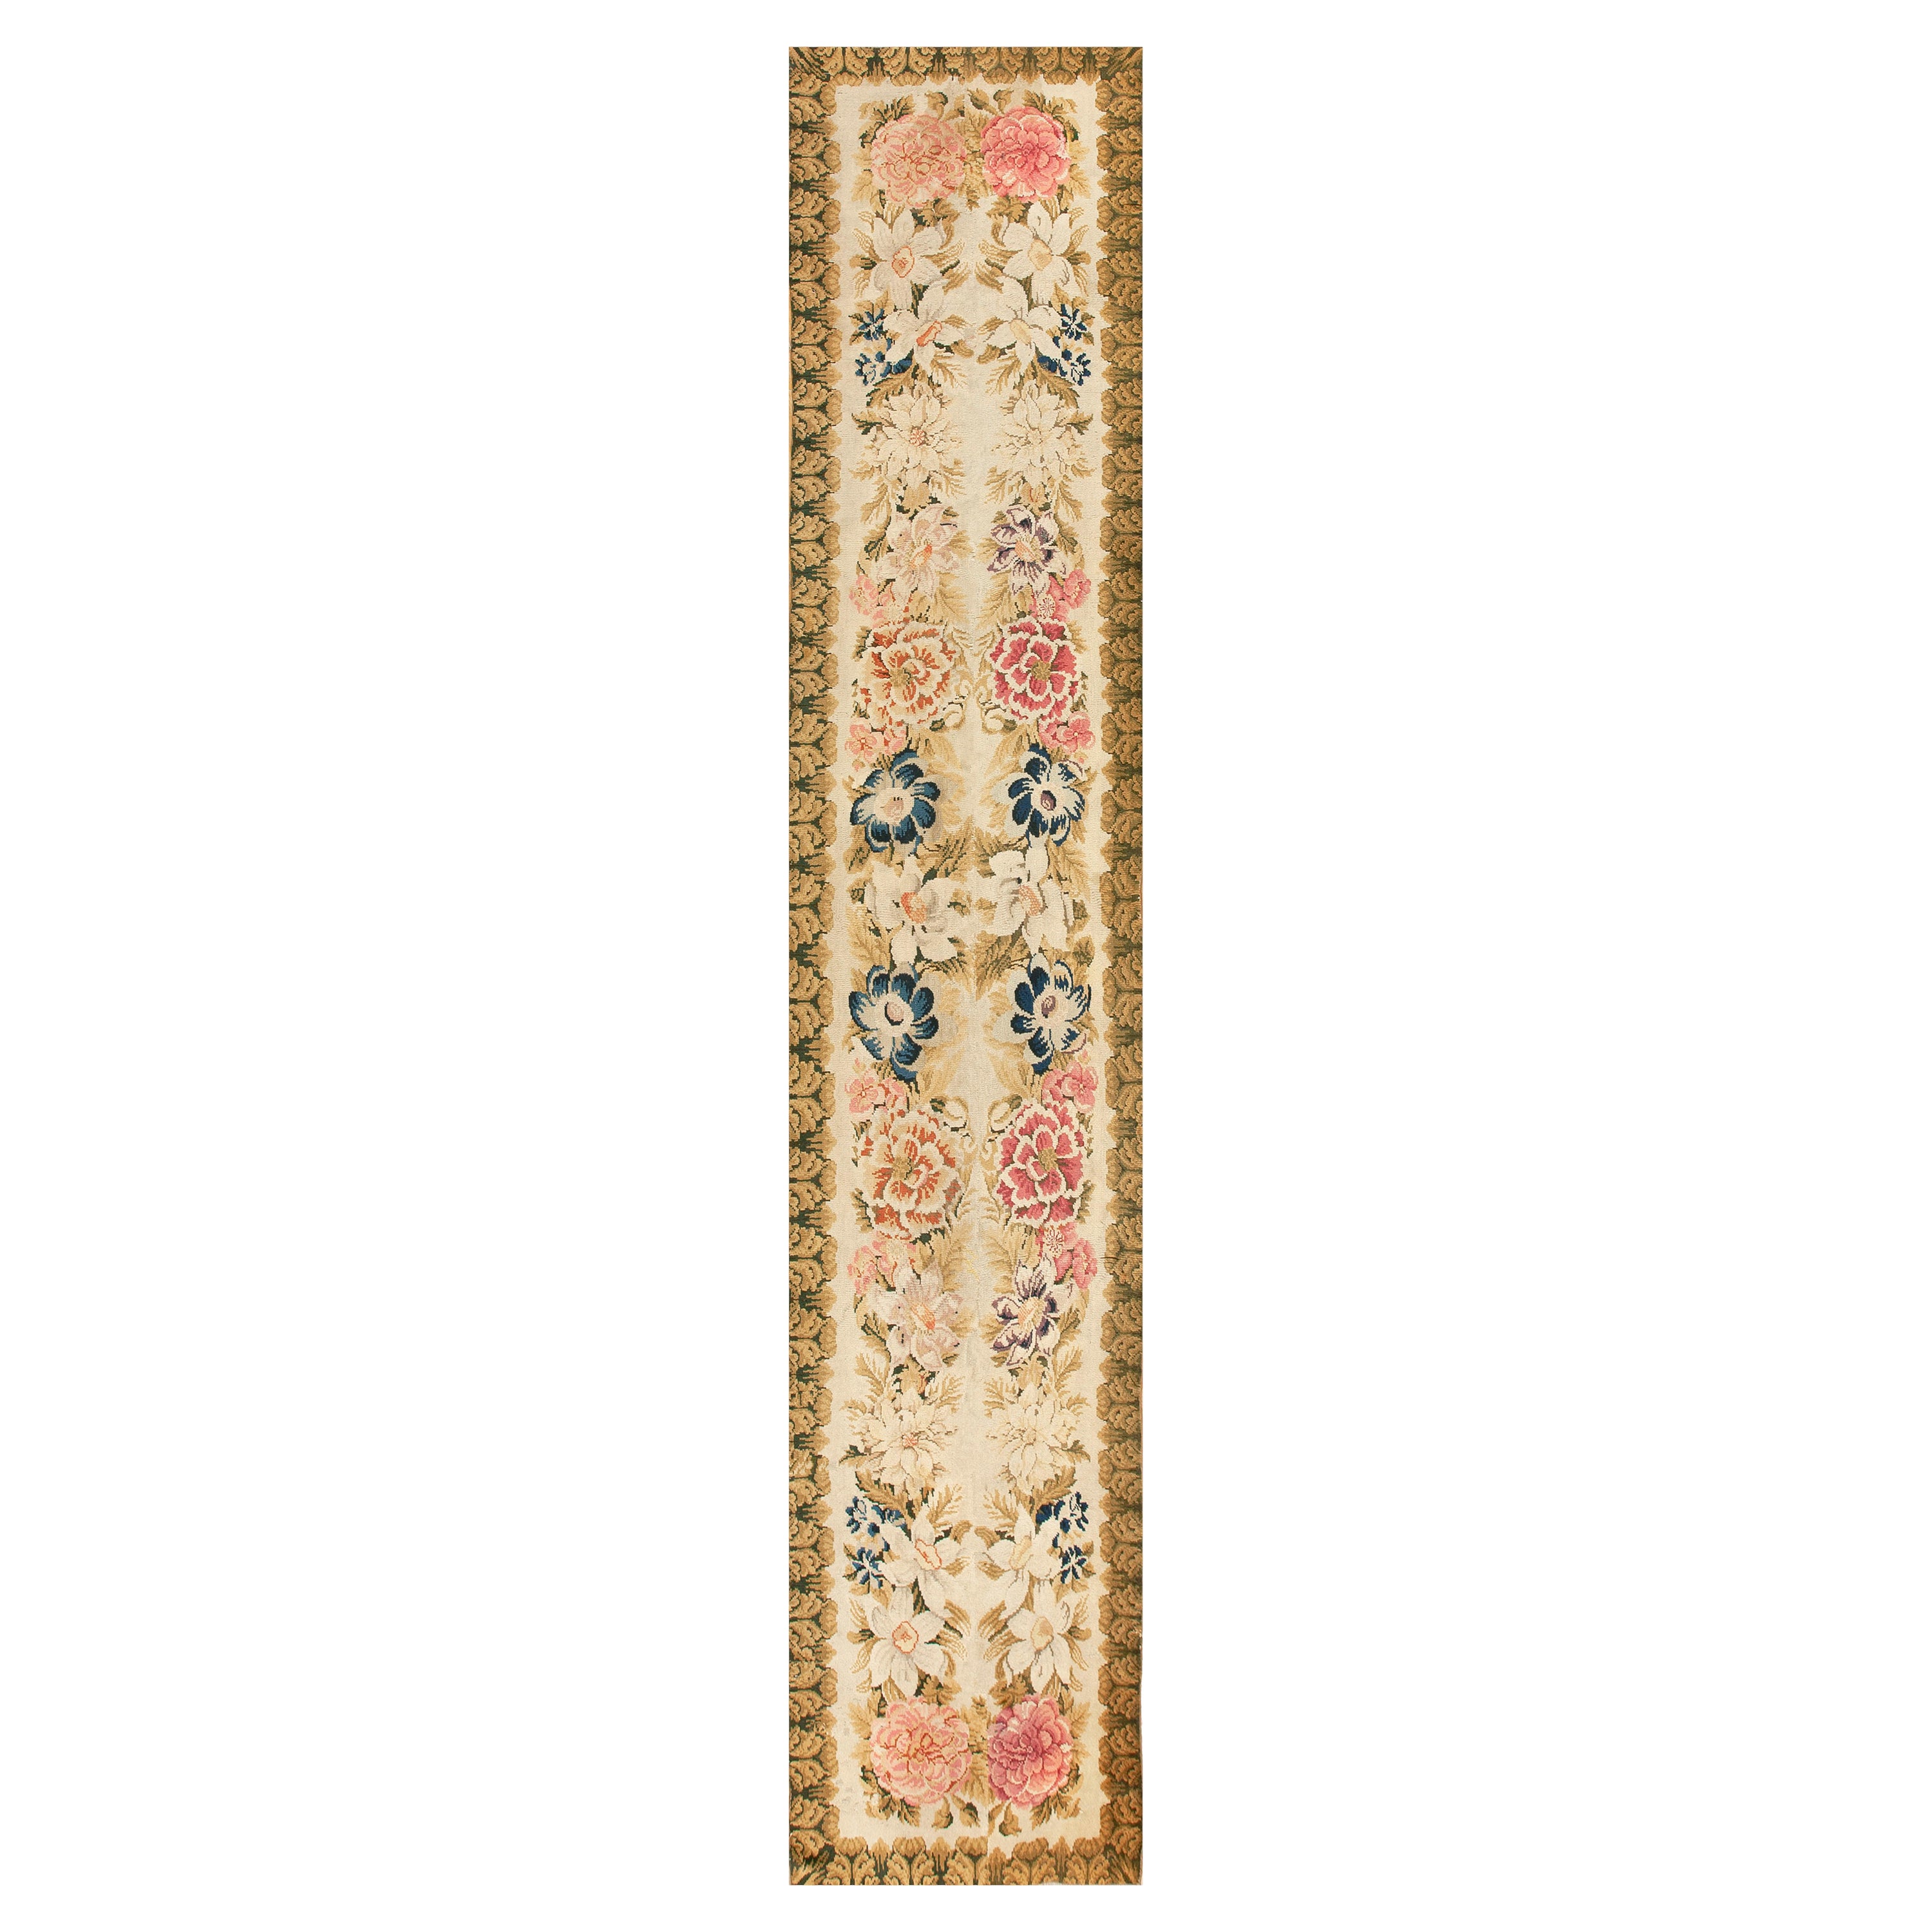 Tapis Axminster anglais du milieu du 18ème siècle ( 3''4"" x 17''4"" - 102 x 528 cm )